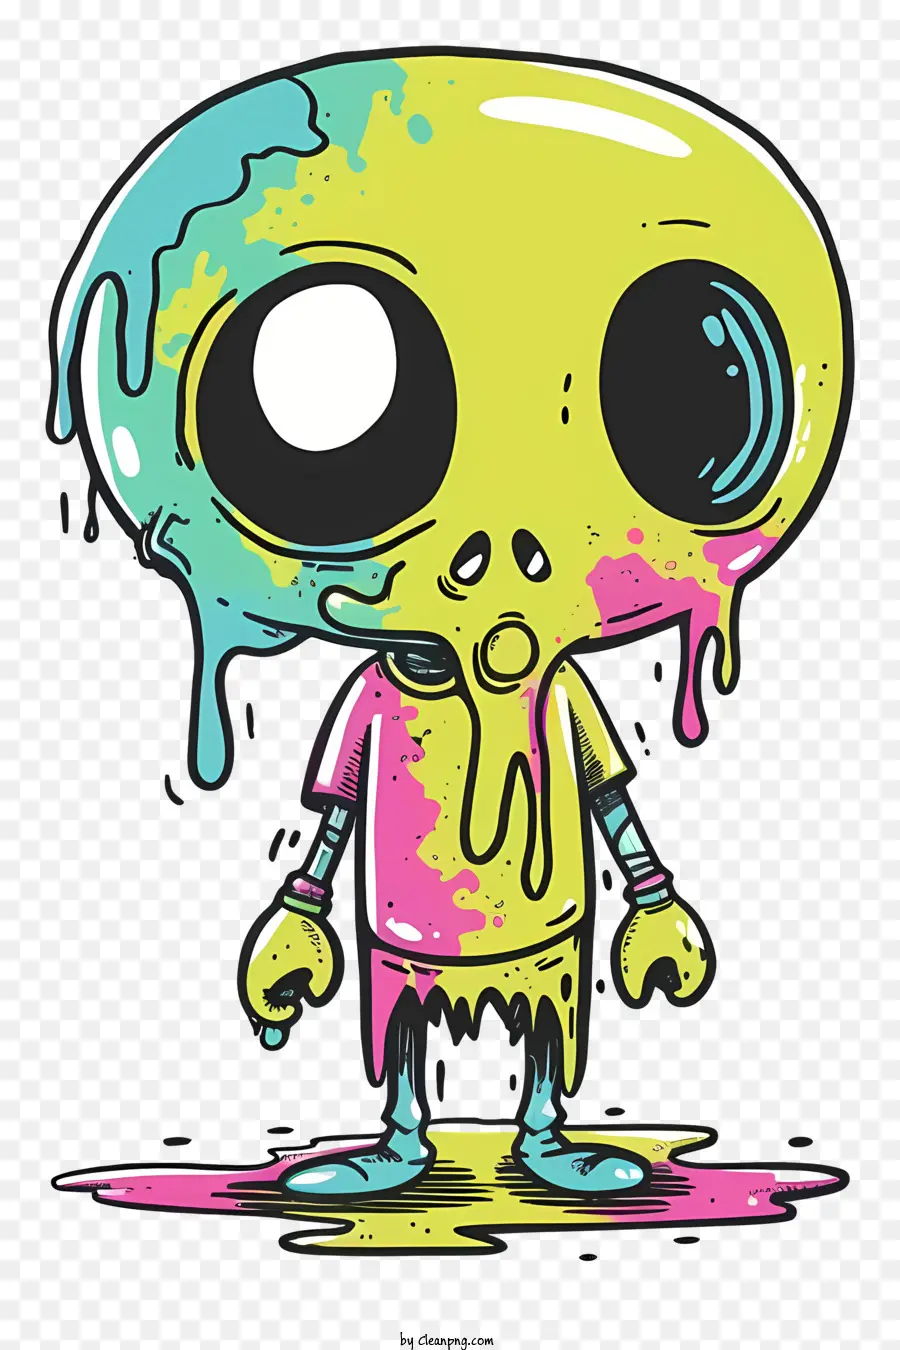 Zombie hoạt hình minh họa sơn người ngoài hành tinh nhỏ giọt màu xanh lá cây - Người ngoài hành tinh đầy màu sắc, hay thay đổi với sơn nhỏ giọt